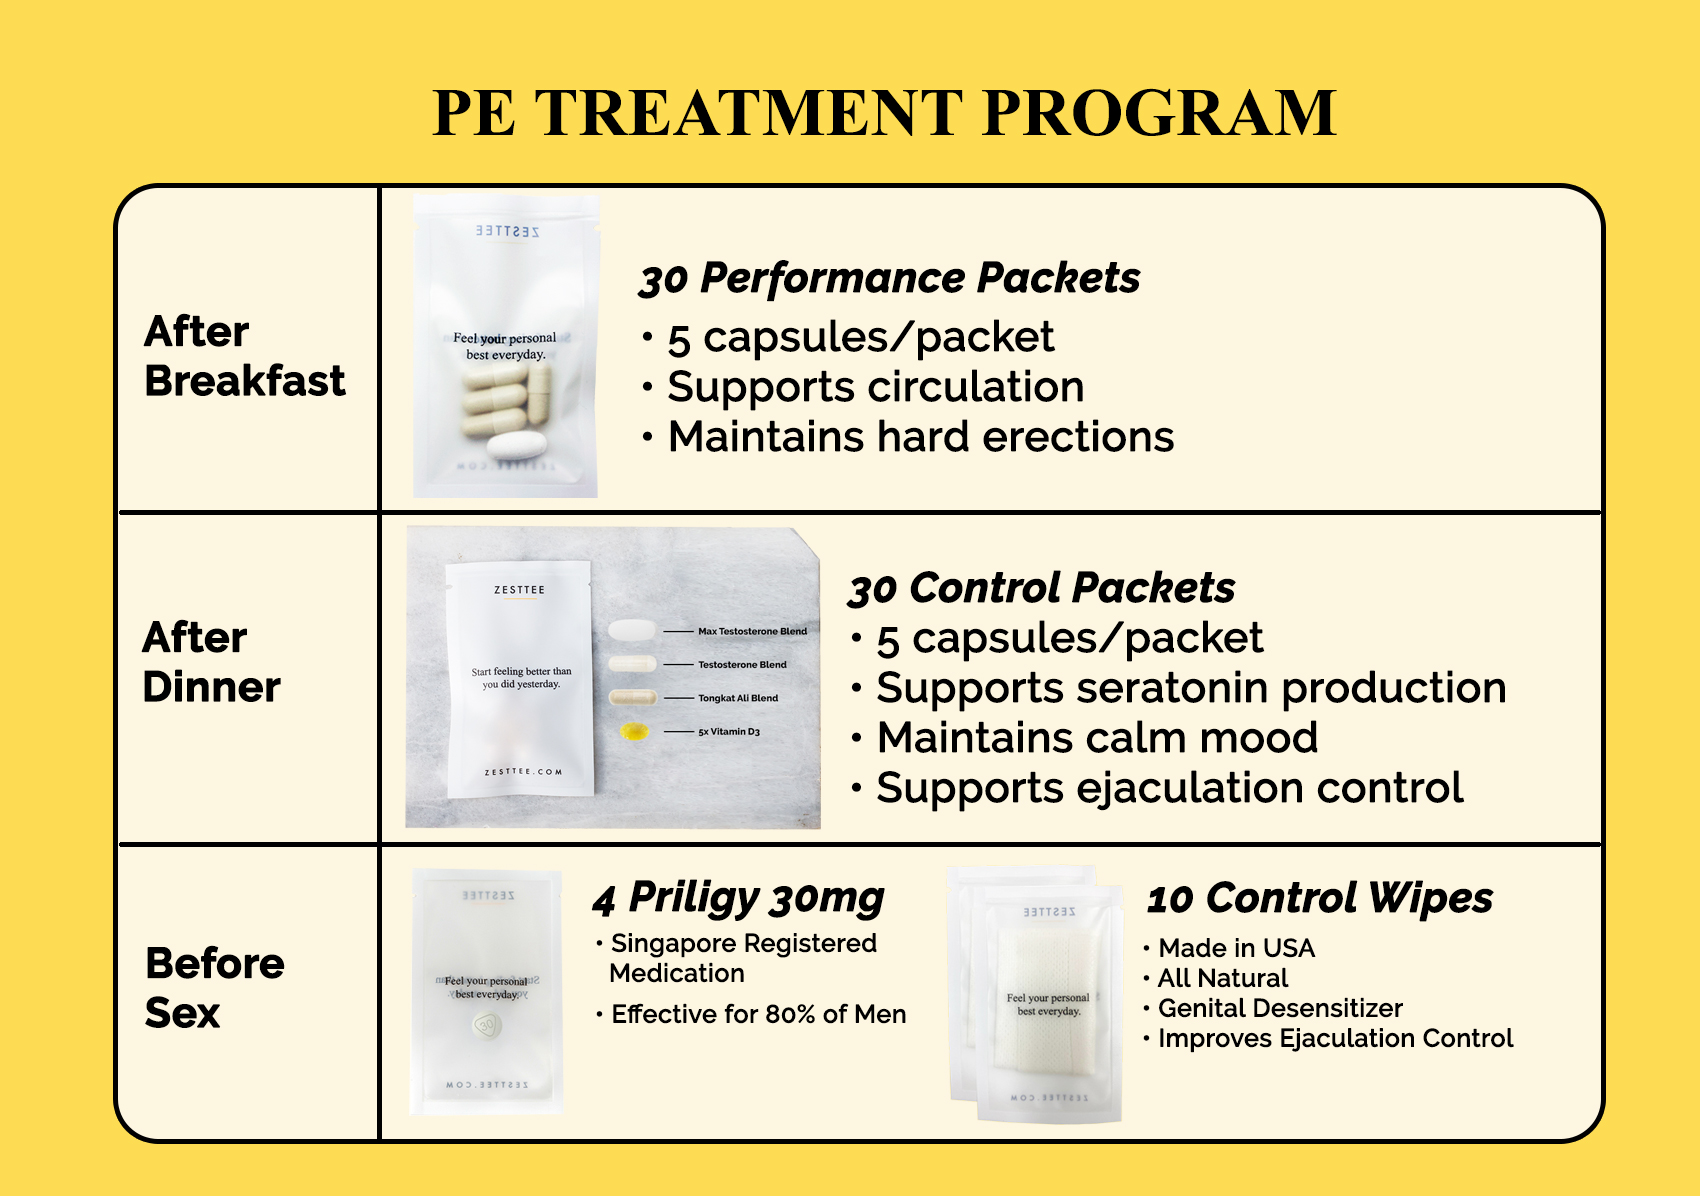 https://media.zesttee.com/cms/global-pe-treatment-program_12697-a.jpg